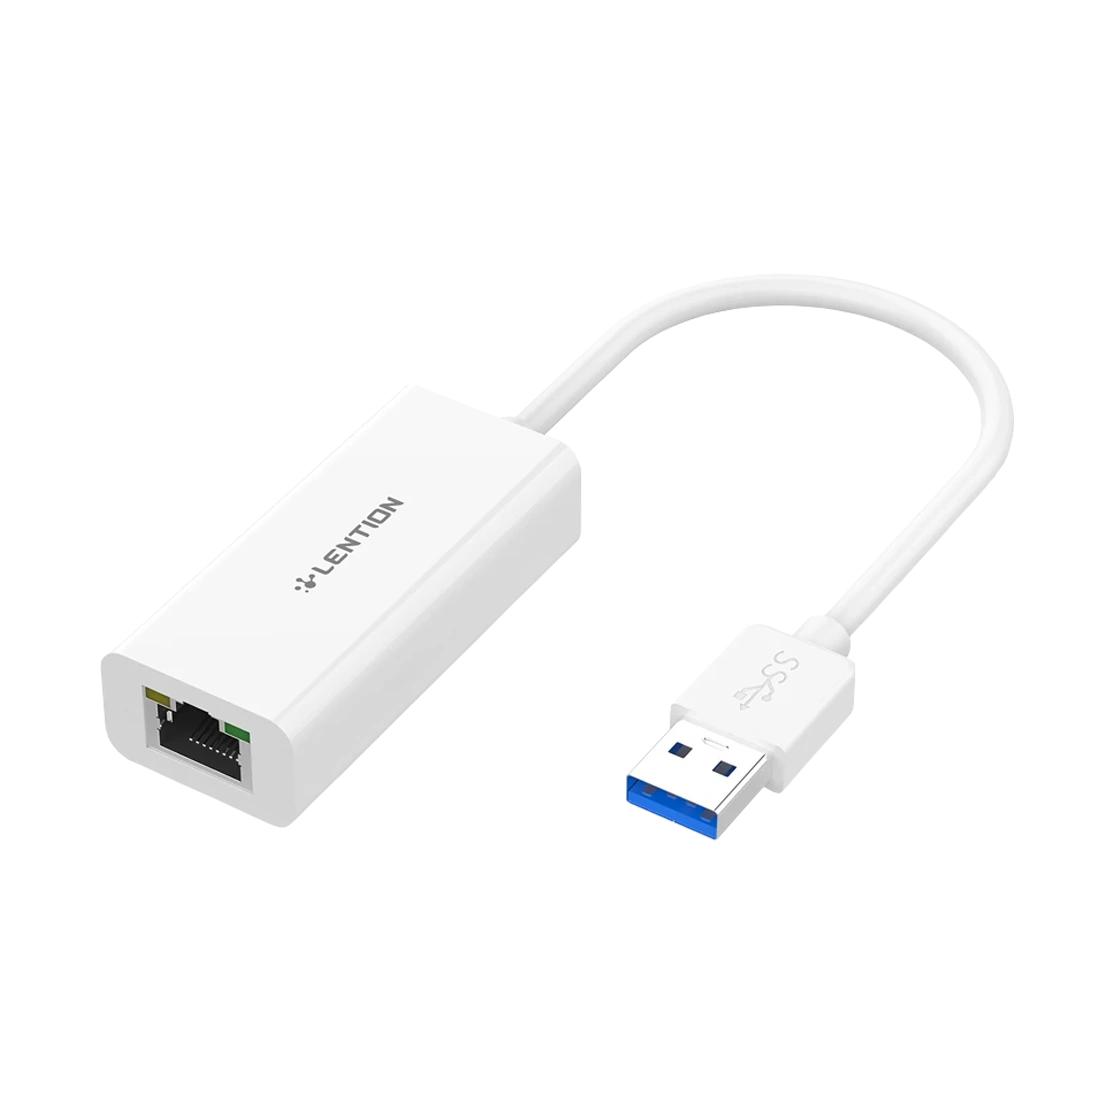 Lention USB to Gigabit Ethernet Adapter HU404GE